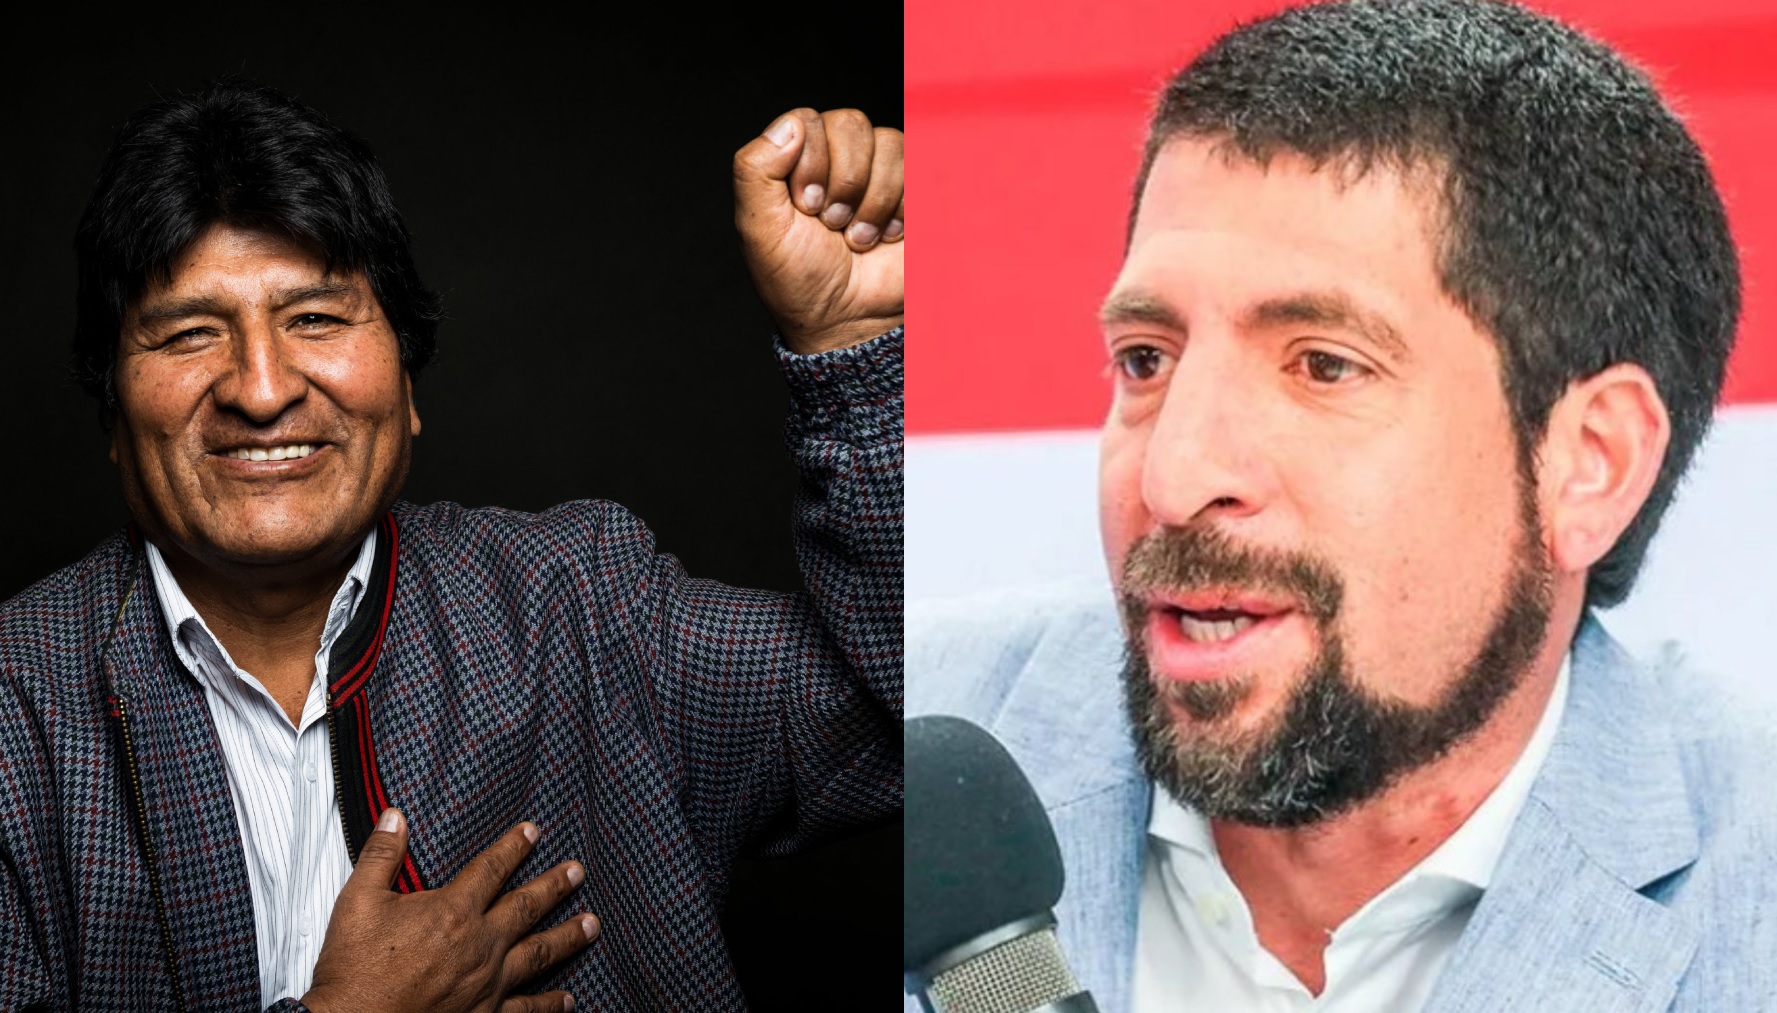 El expresidente boliviano Evo Morales y el abogado Raúl Noblecilla.